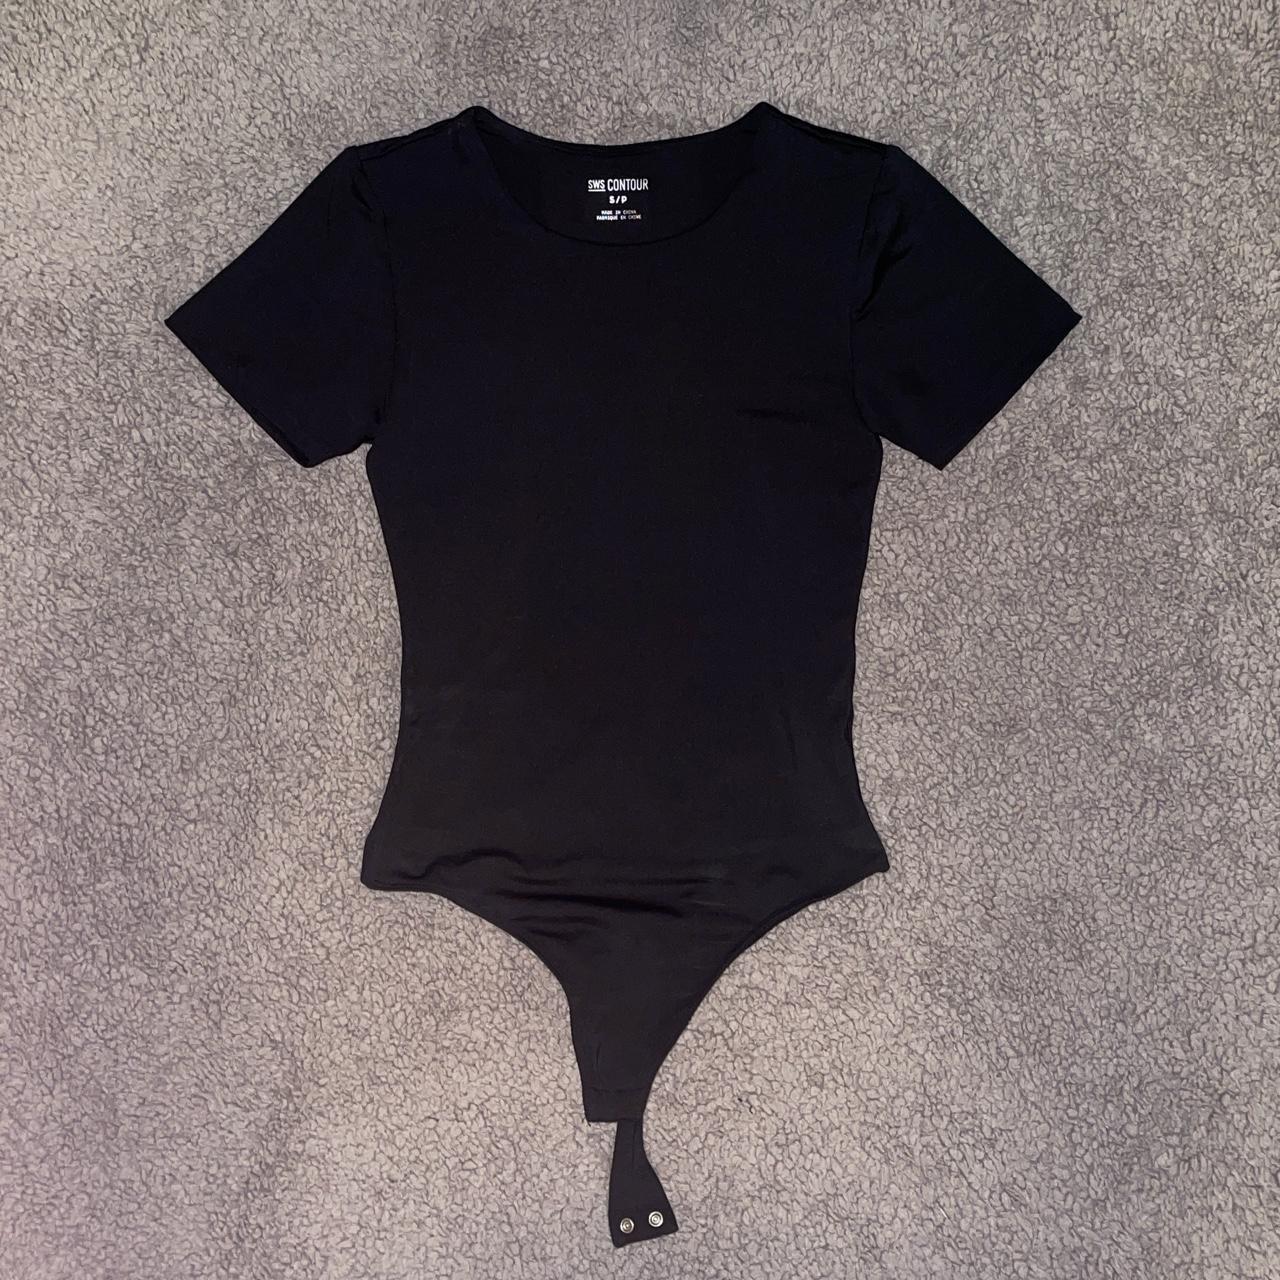 black contour bodysuit. - size S - brand is SWS... - Depop